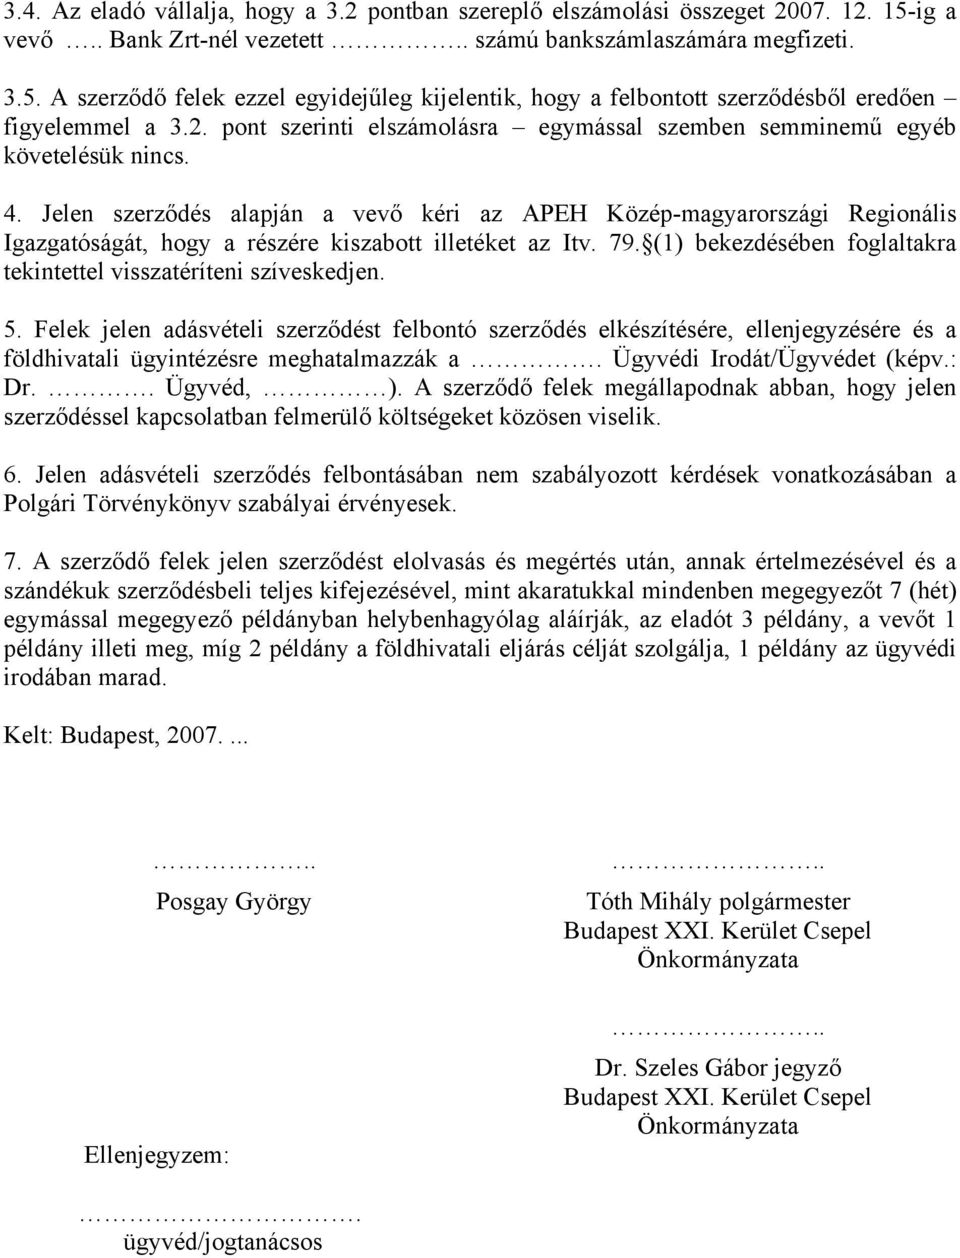 Jelen szerződés alapján a vevő kéri az APEH Közép-magyarországi Regionális Igazgatóságát, hogy a részére kiszabott illetéket az Itv. 79.